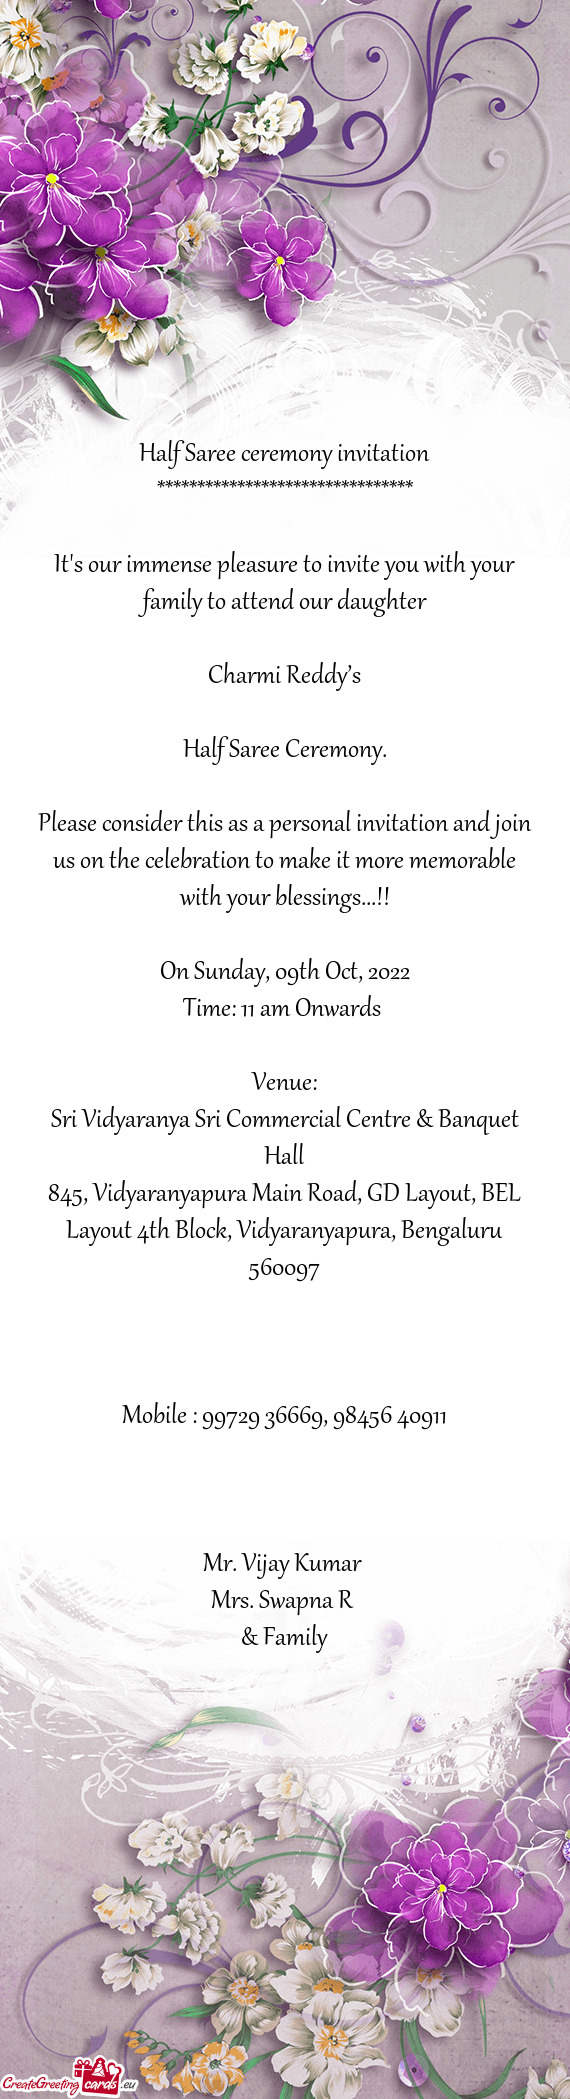 Sri Vidyaranya Sri Commercial Centre & Banquet Hall